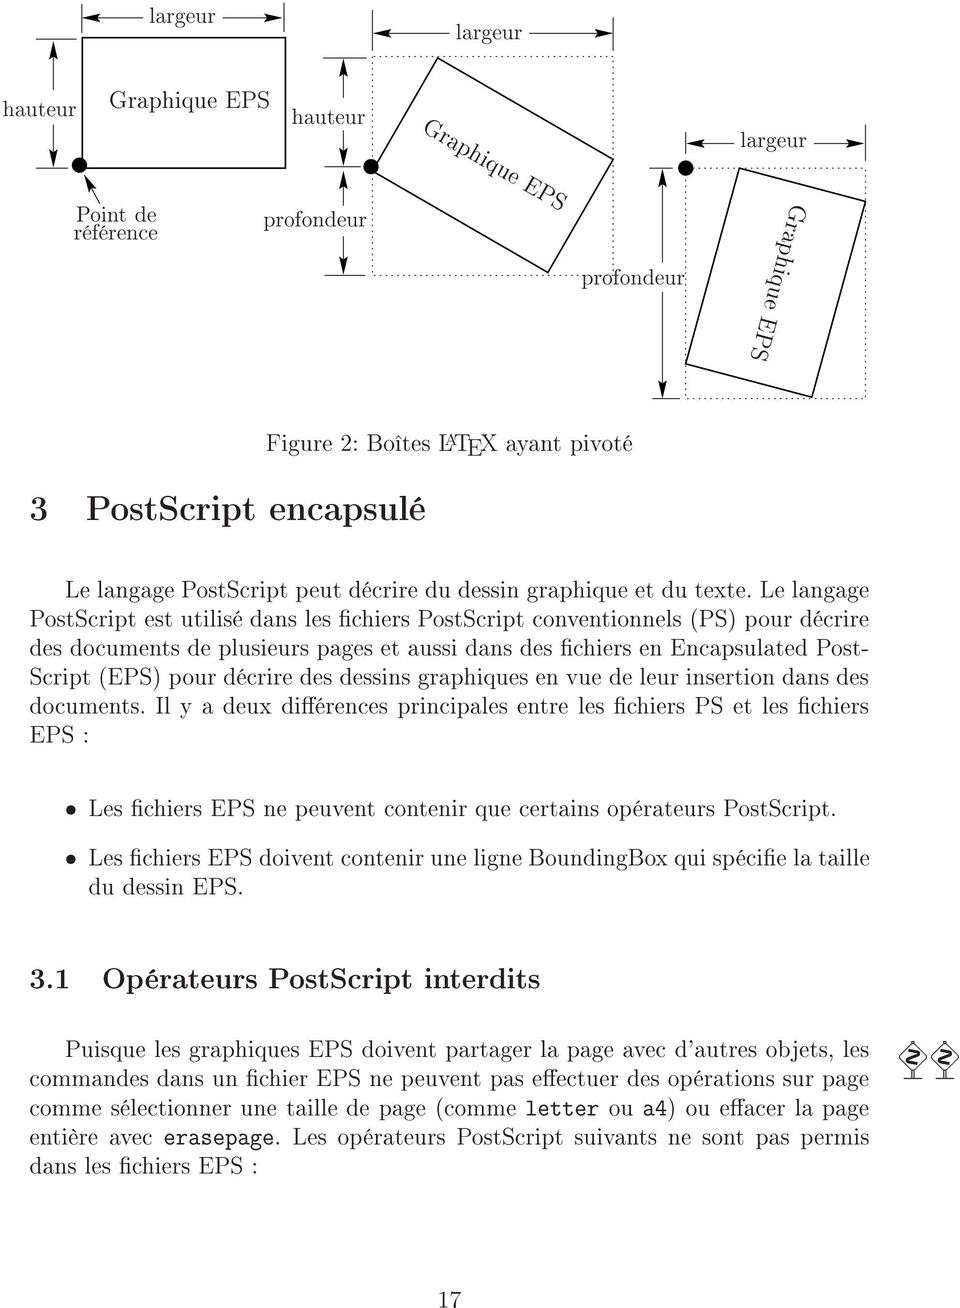 Le langage PostScript est utilisé dans les chiers PostScript conventionnels (PS) pour décrire des documents de plusieurs pages et aussi dans des chiers en Encapsulated Post- Script (EPS) pour décrire